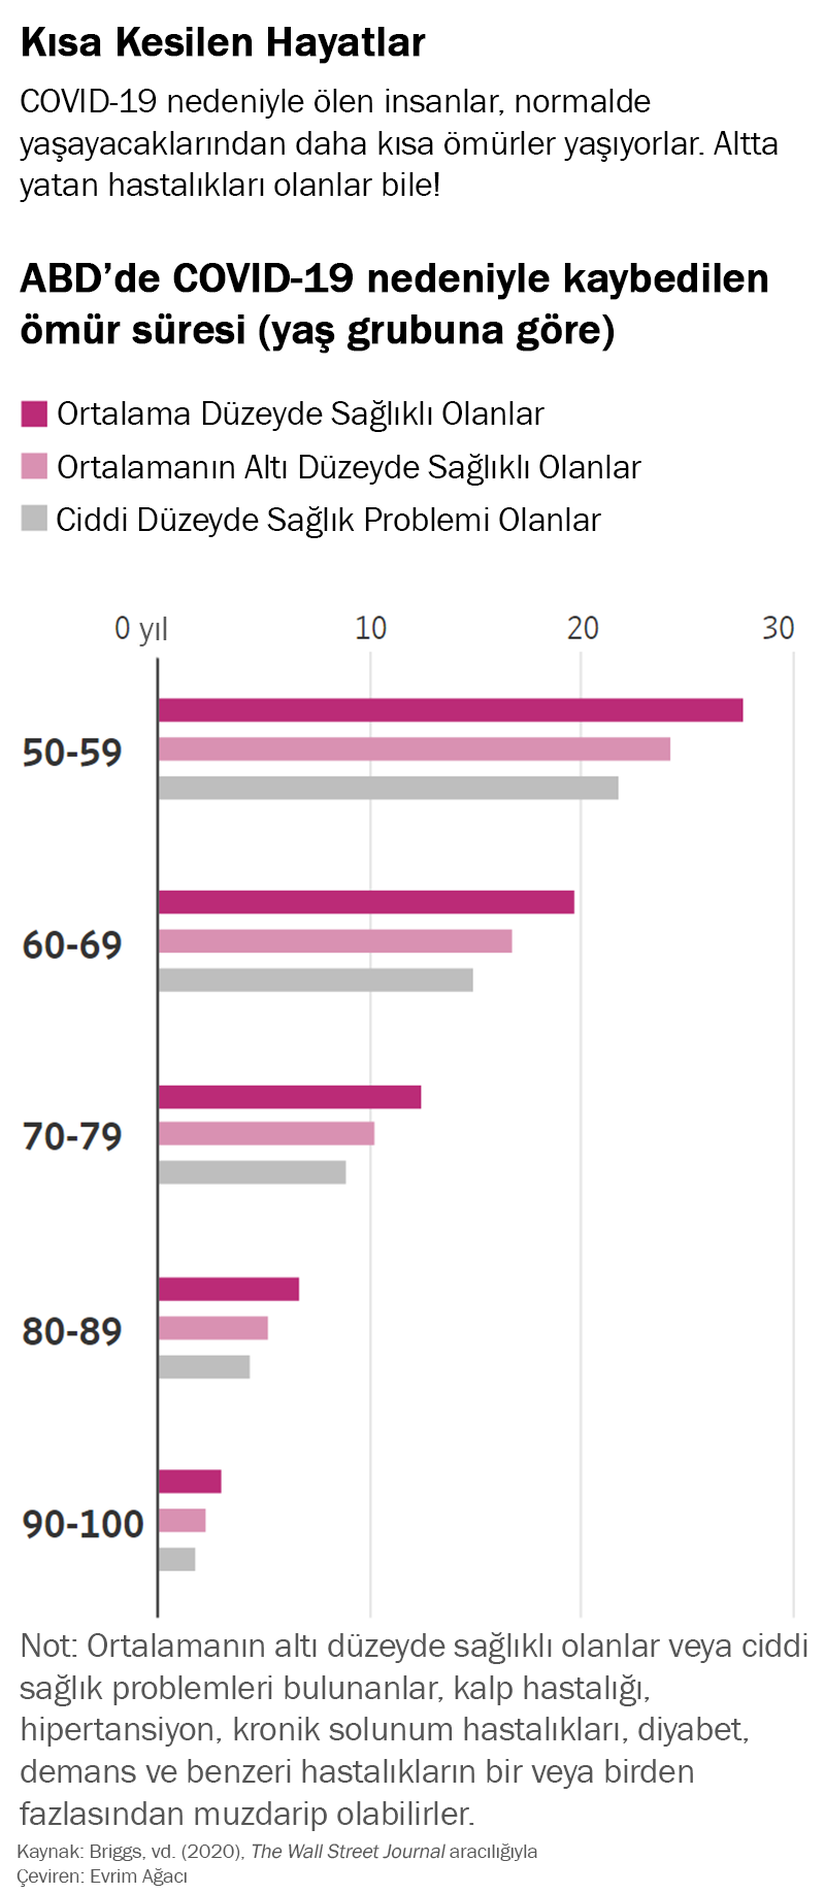 ABD’de COVID-19 nedeniyle kaybedilen ömür süresi (yaş grubuna göre)